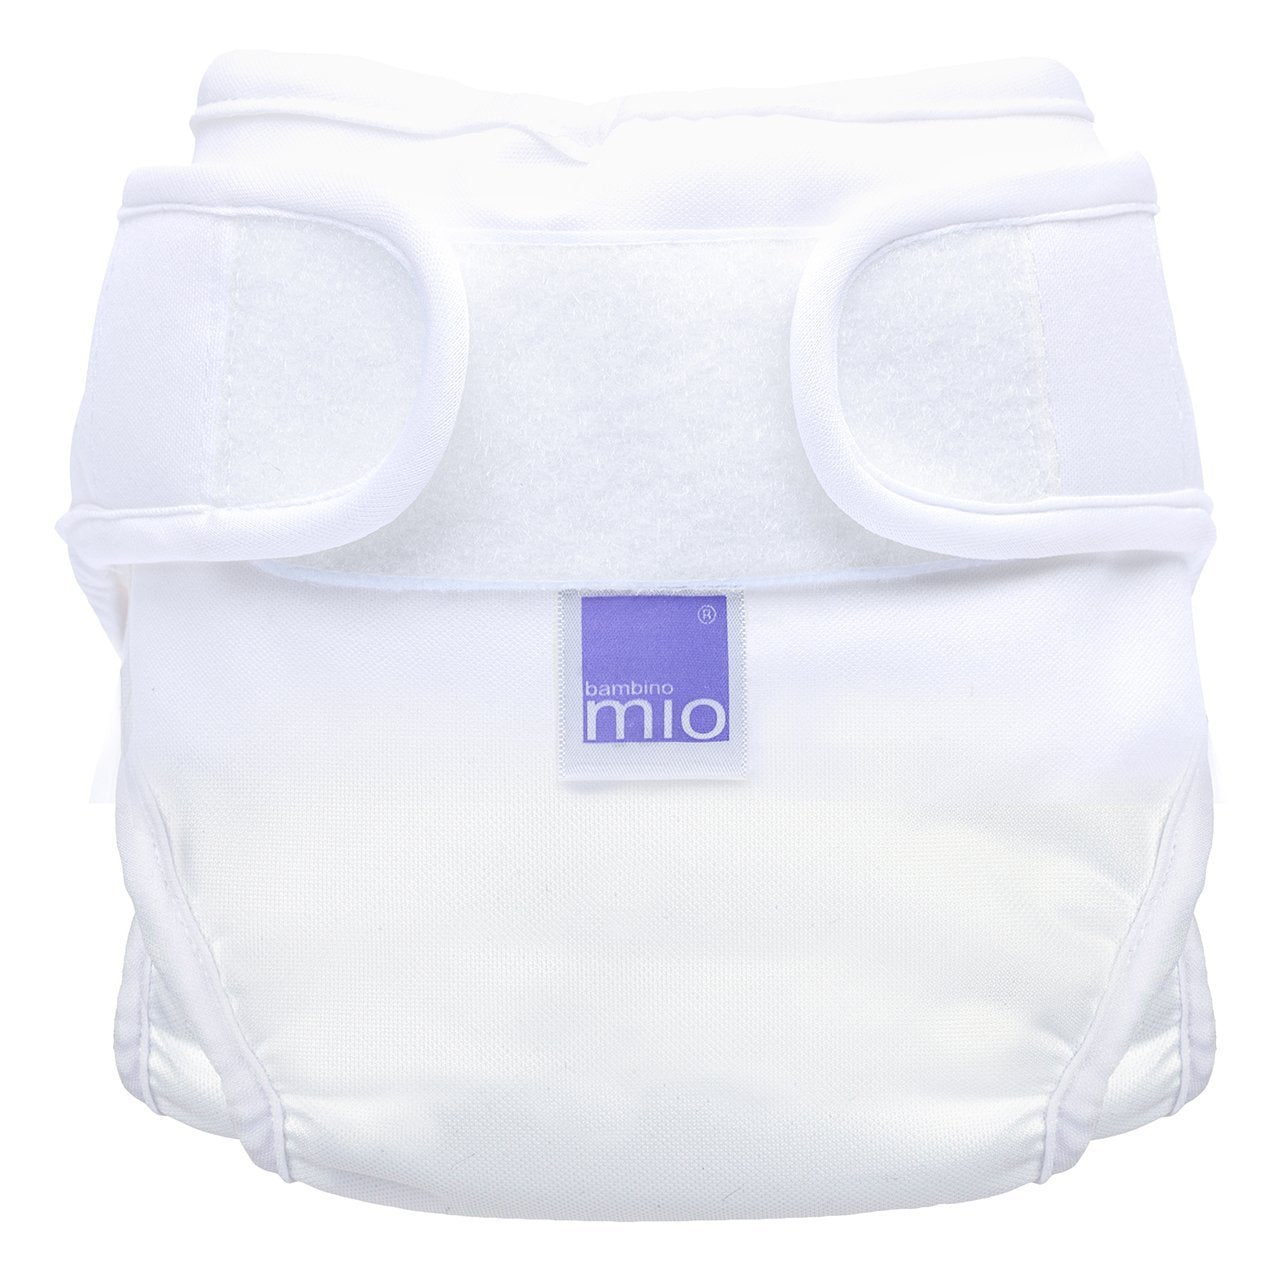 Bambino MioMioduo Reusable Nappy CoverSize: Size 2Colour: Whitereusable nappies nappy coversEarthlets